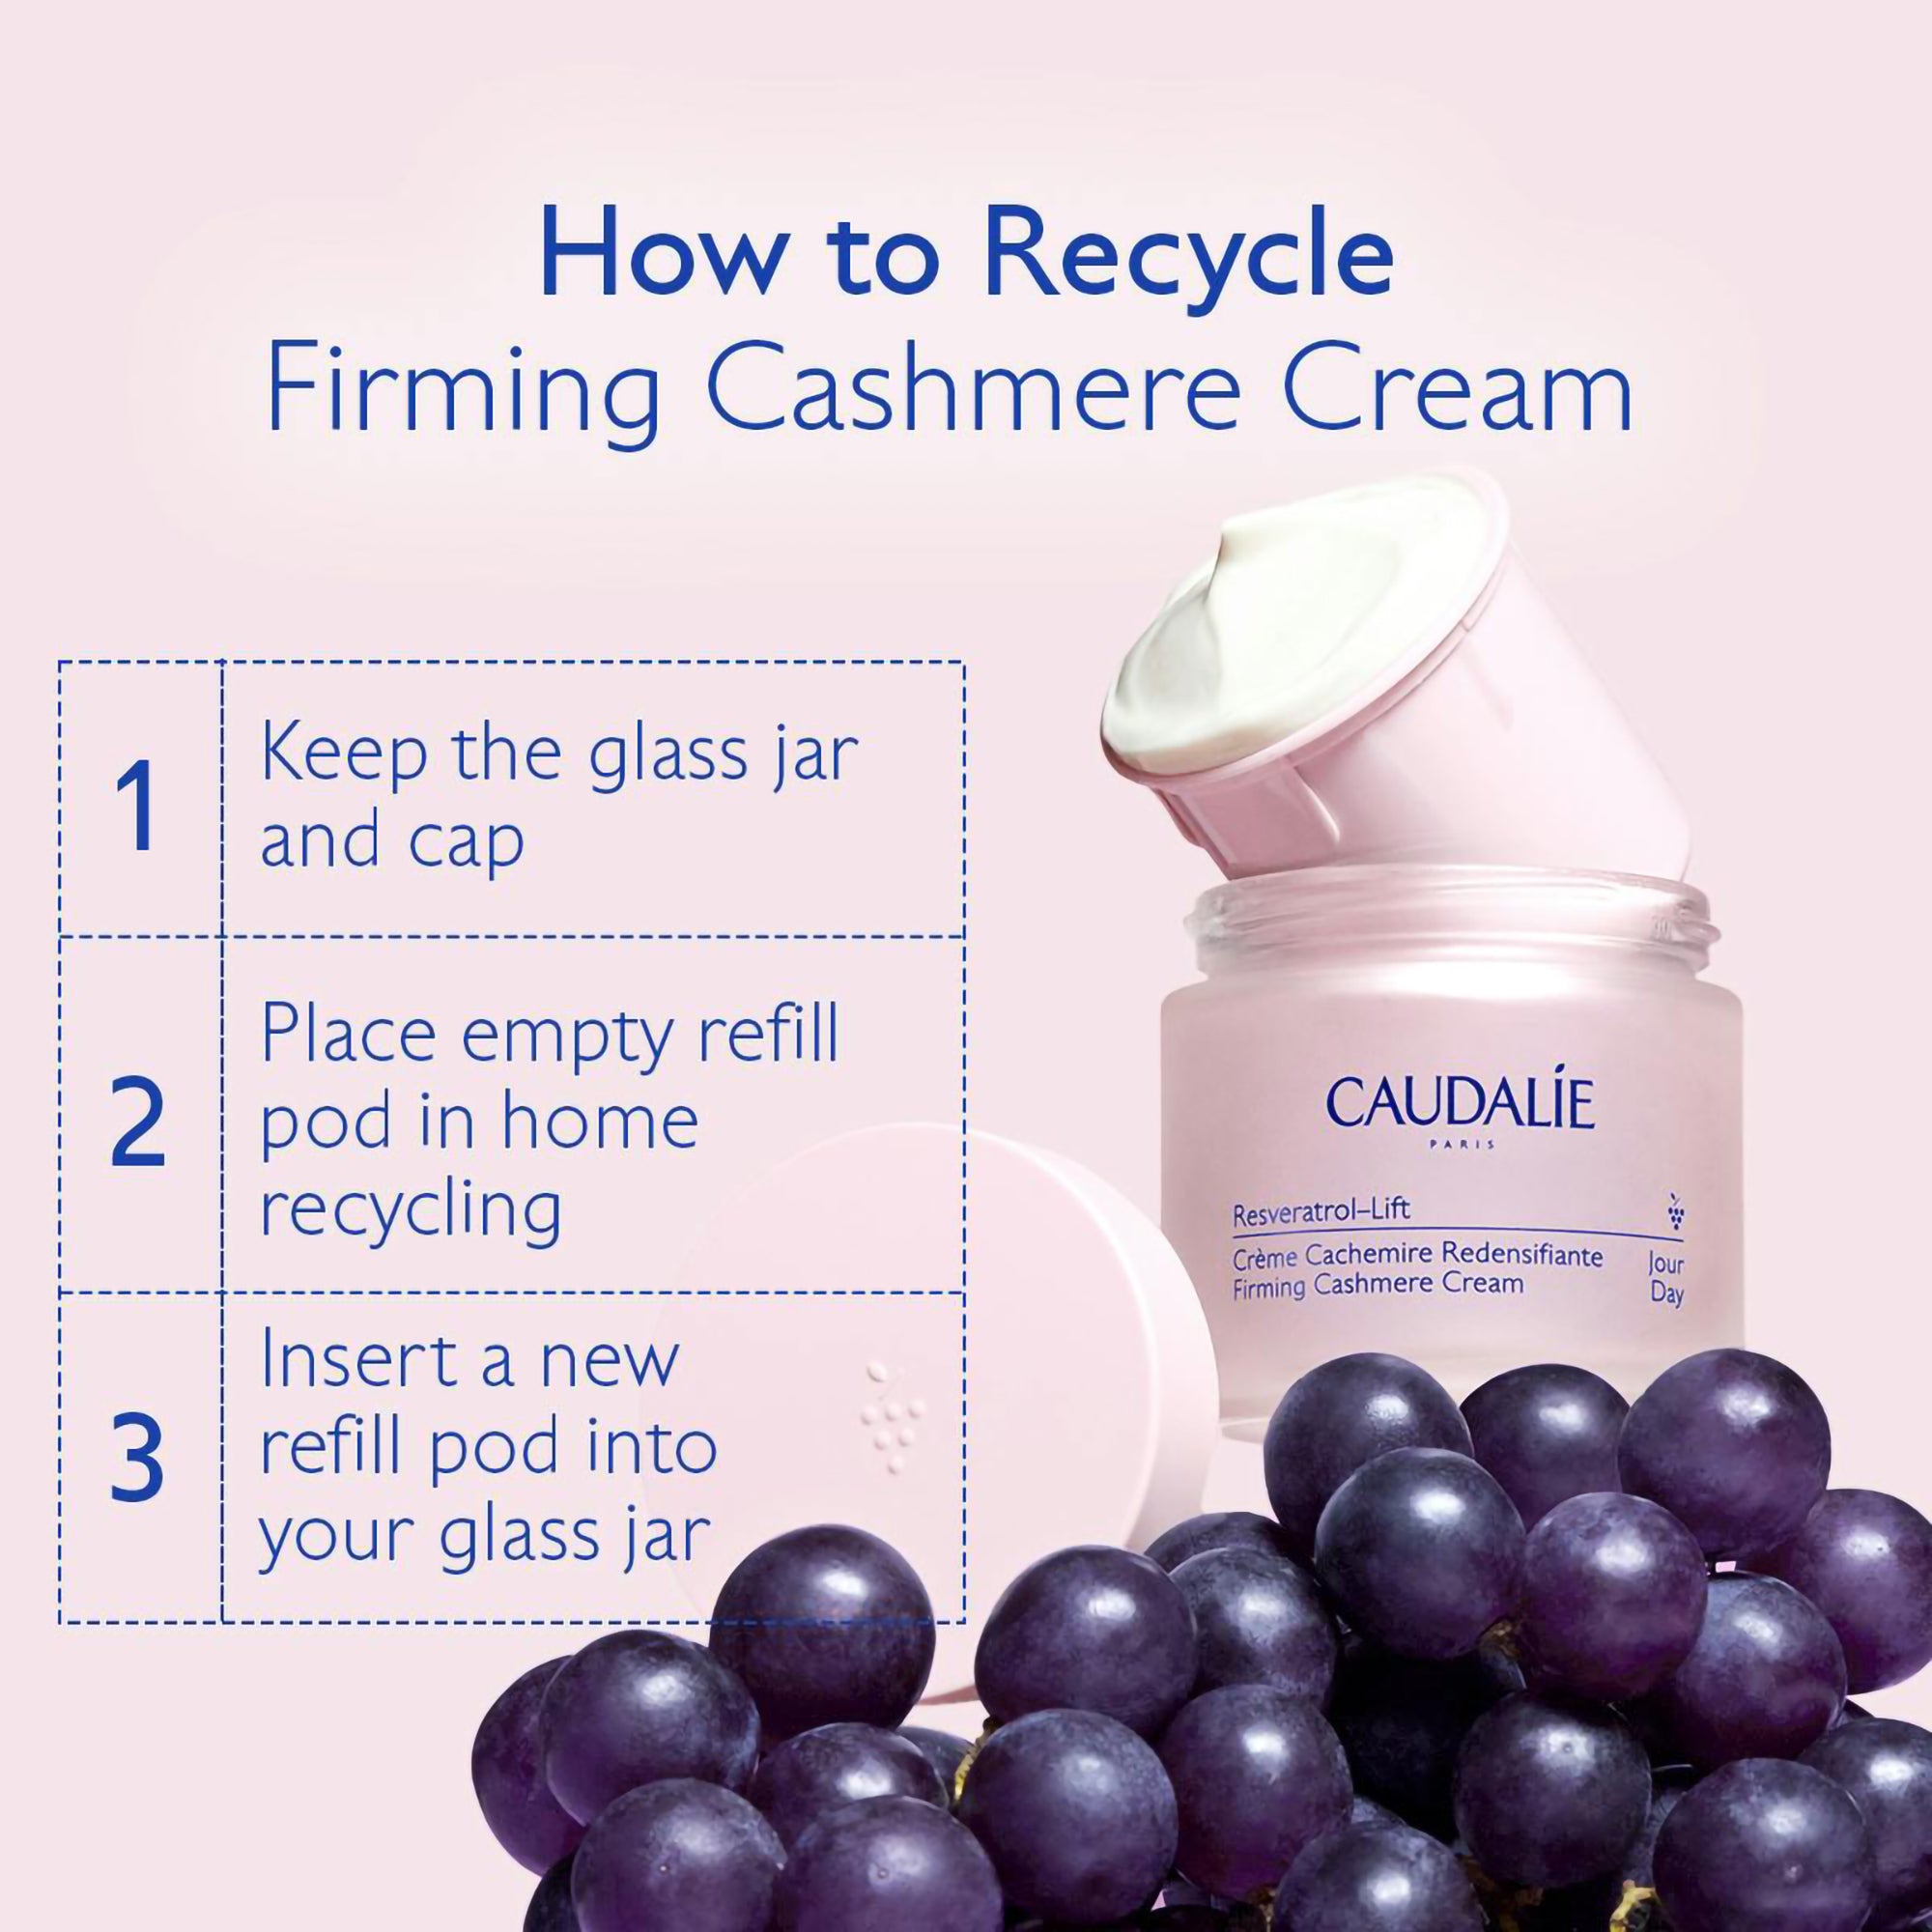 Caudalie Resveratrol-Lift Firming Cashmere Cream / 1.6OZ